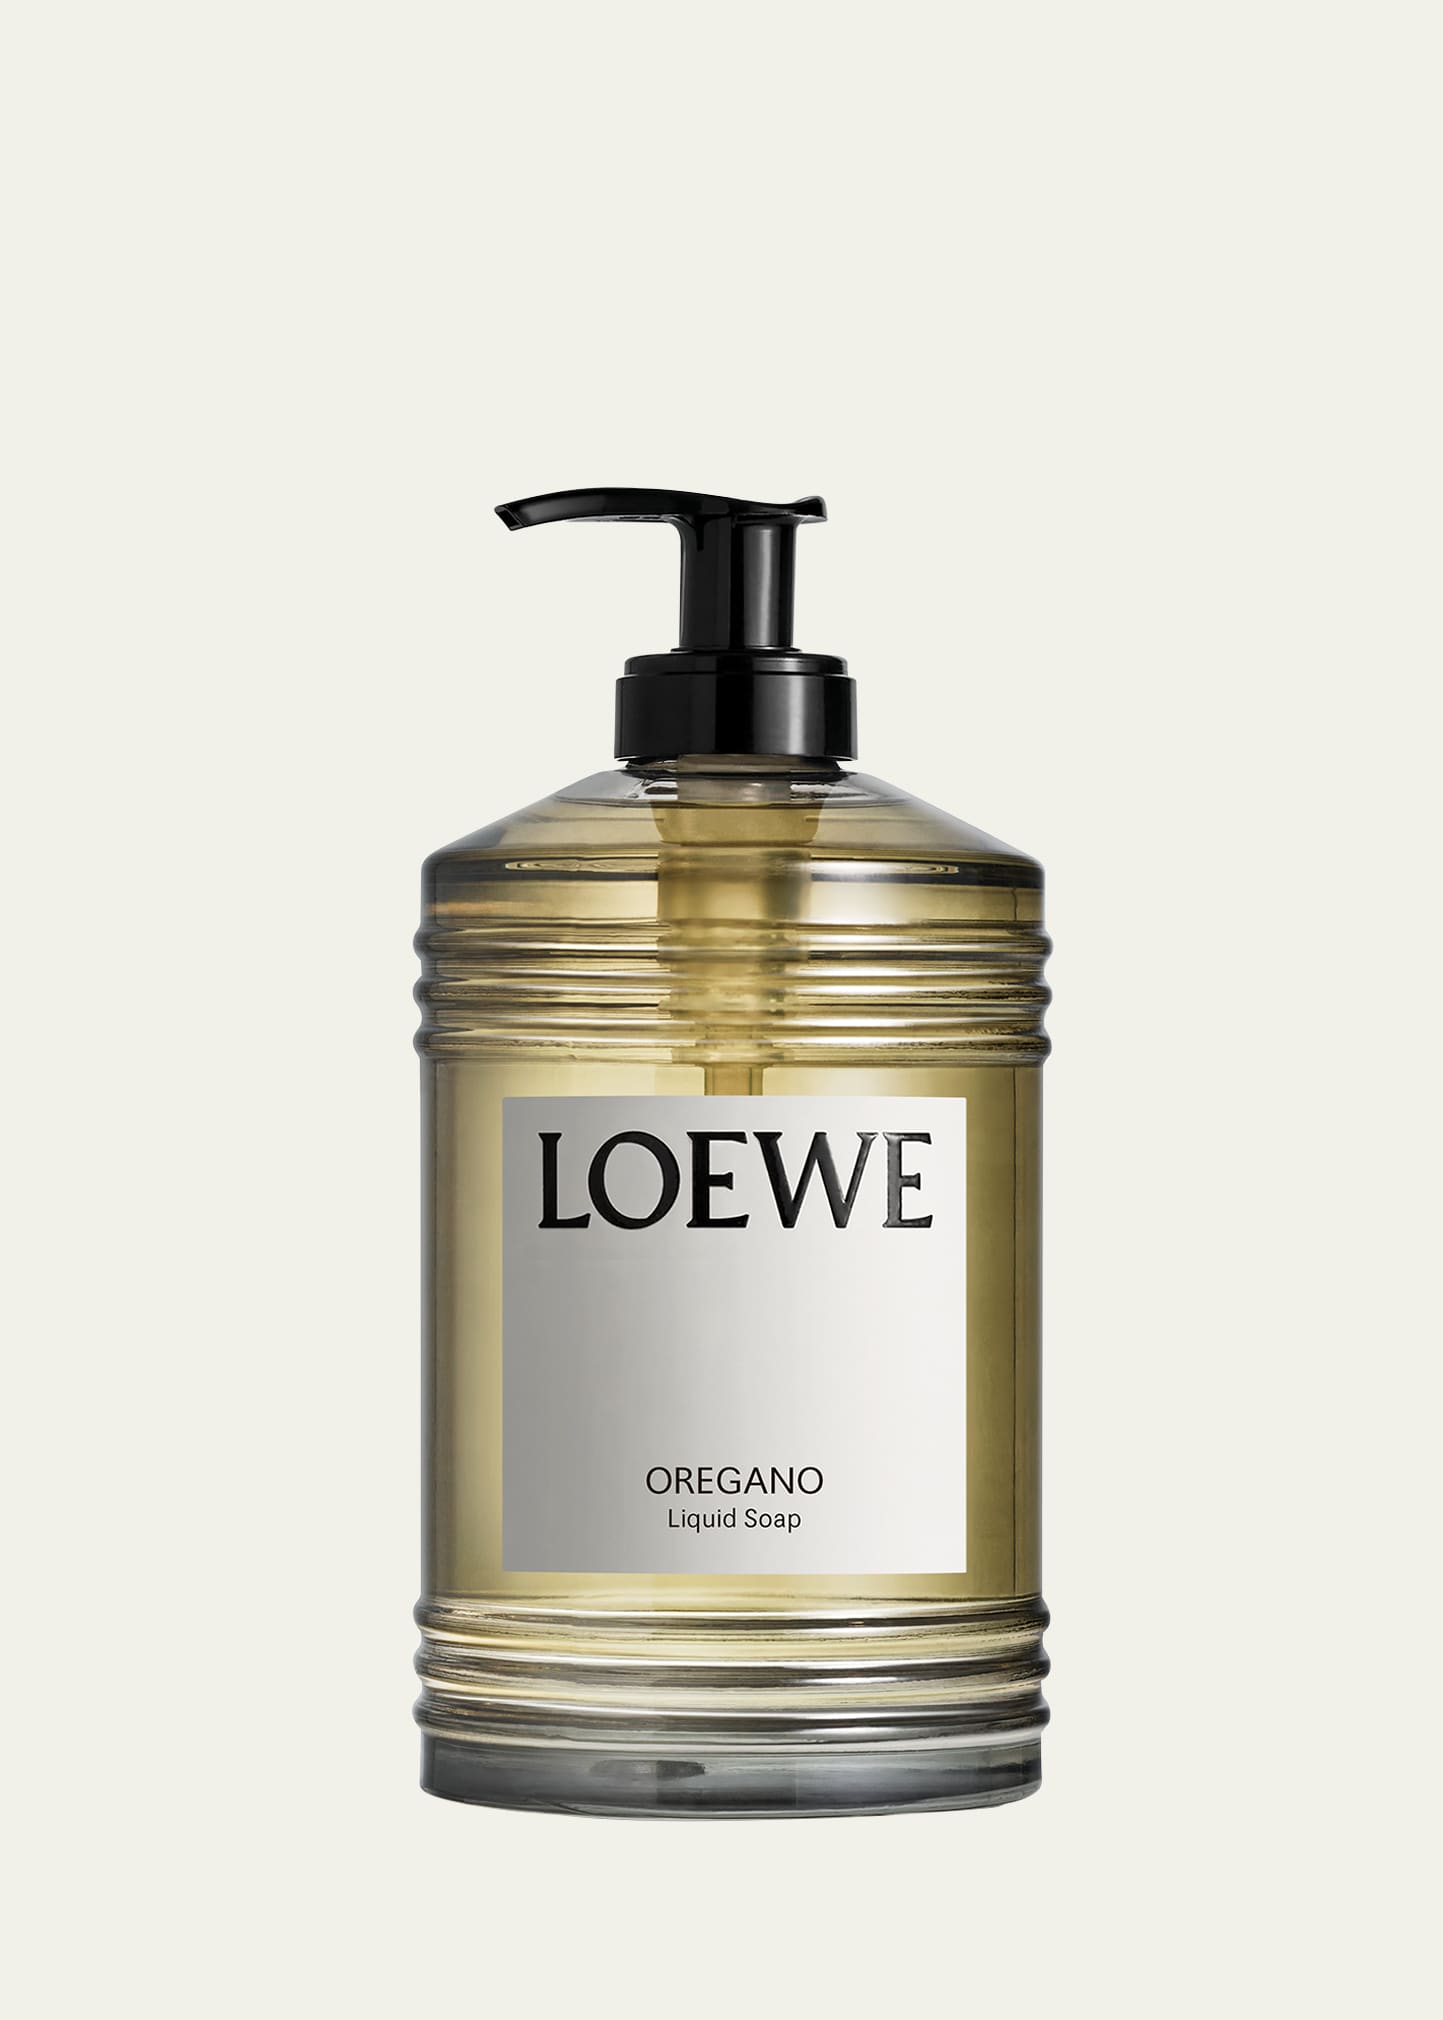 Loewe Oregano Liquid Soap, 12 Oz. In White